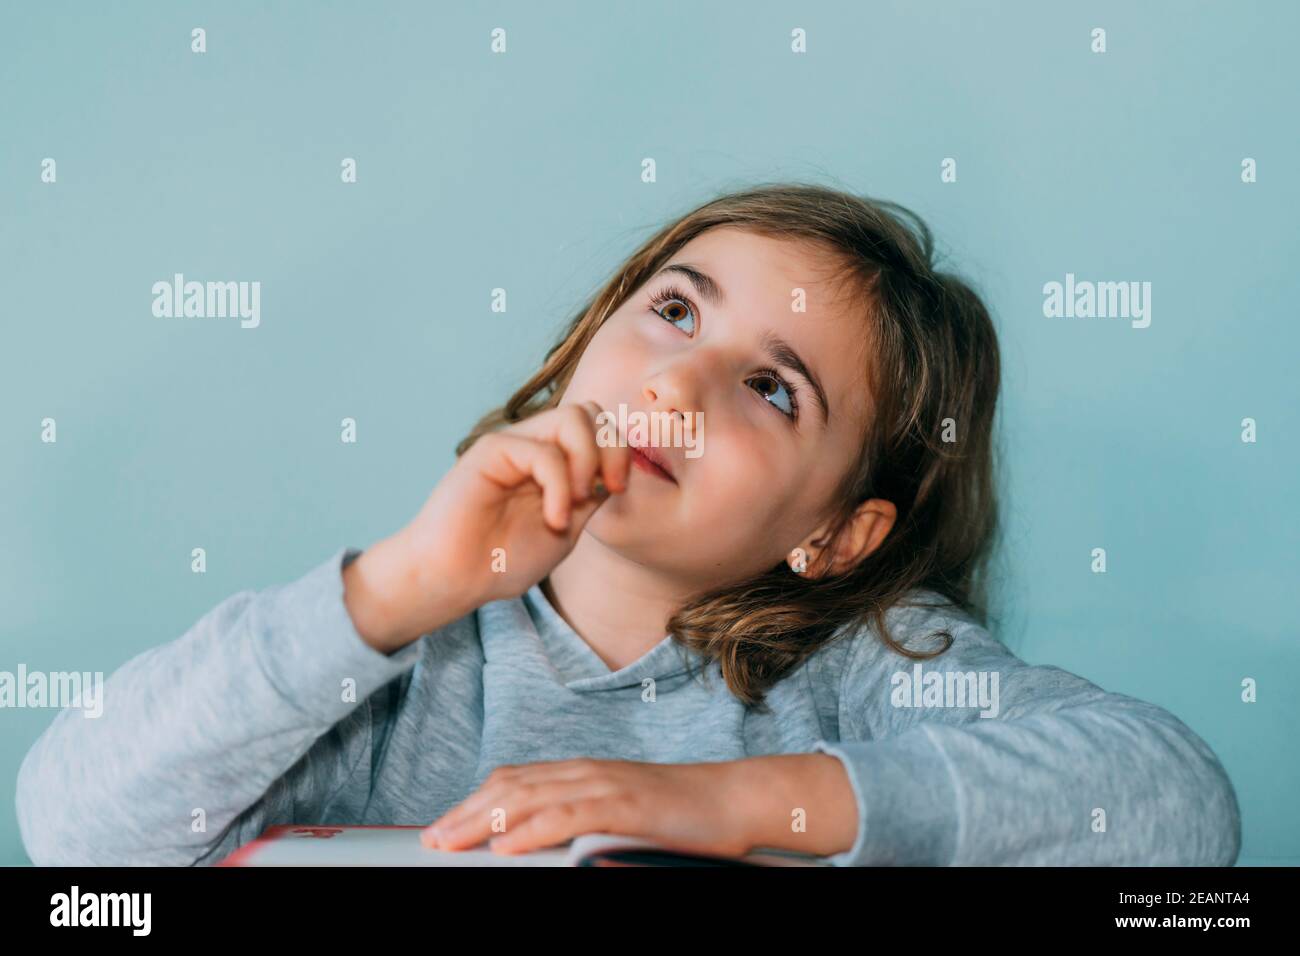 Liebenswert kleines Mädchen denkt an eine Idee, während beißen den Bleistift, schaut nach oben. Alter 7 bis 9 Jahre, horizontal Stockfoto